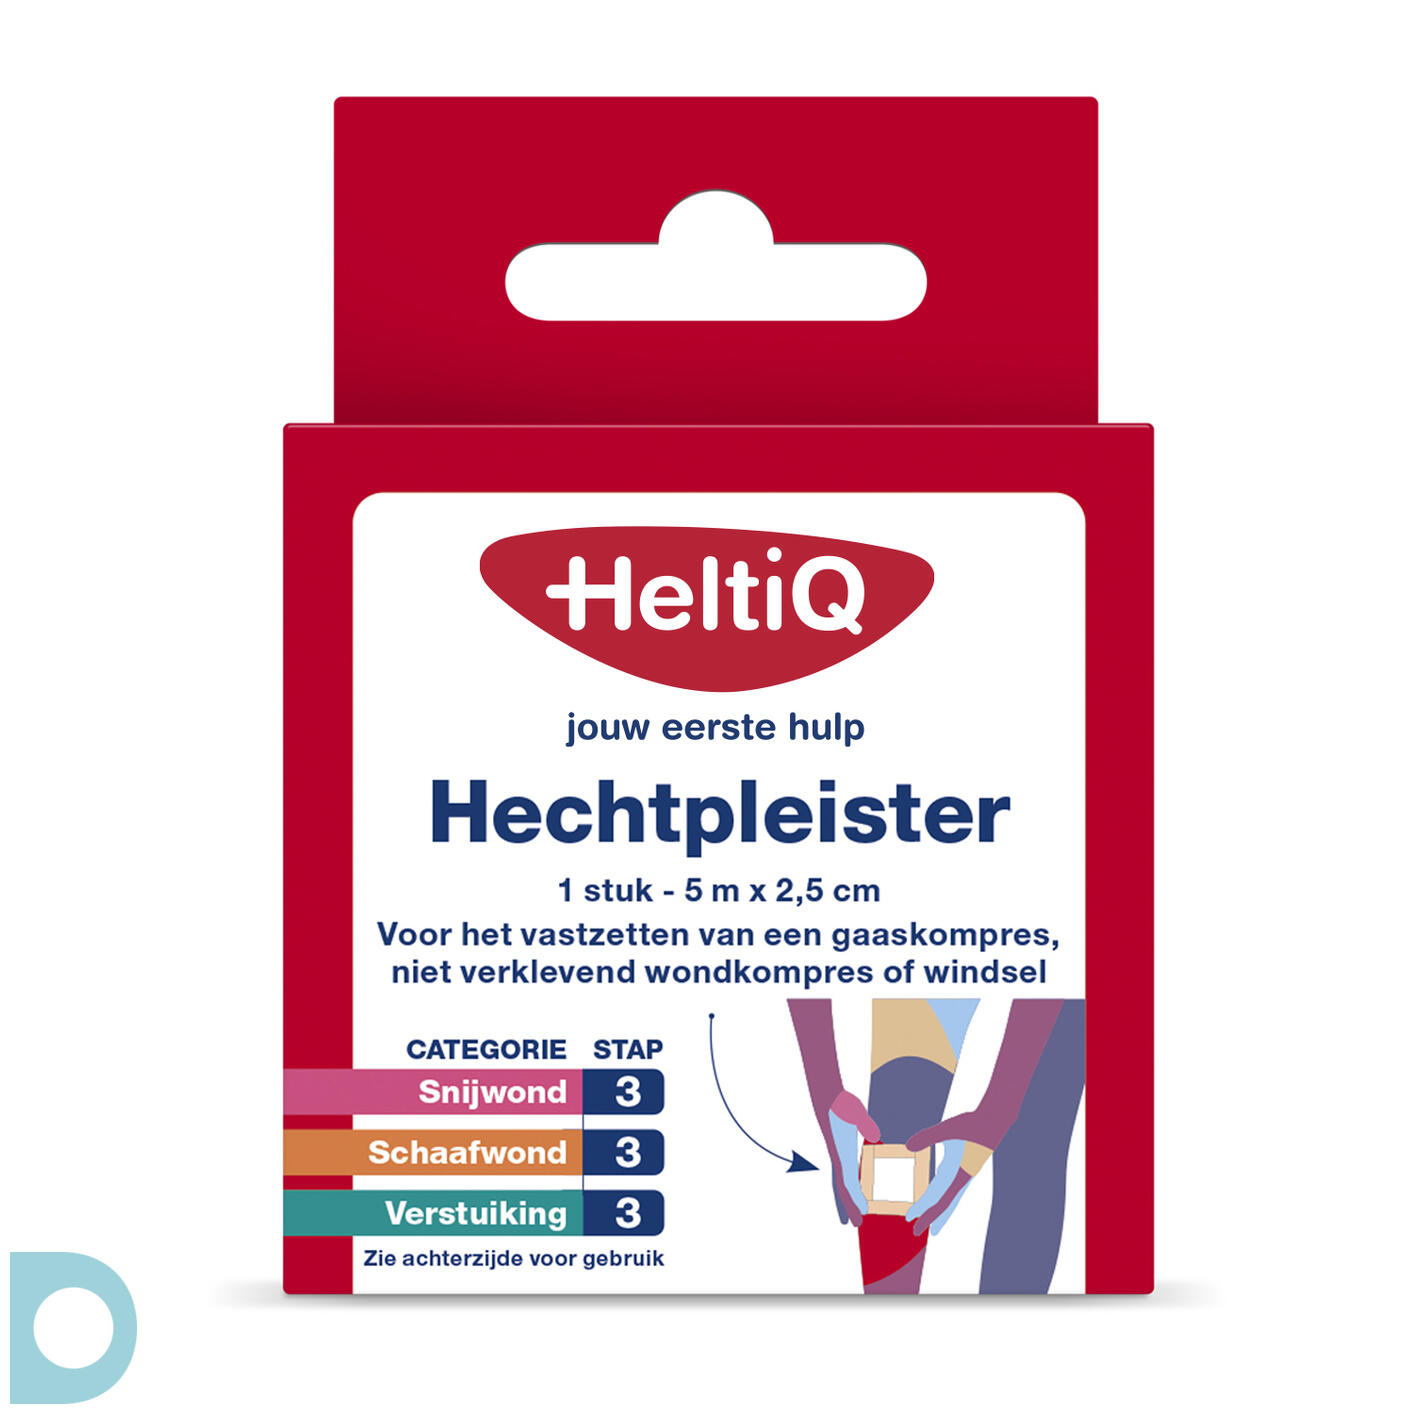 vrijdag Productie potlood HeltiQ Hechtpleister 2,5cmx5m kopen bij De Online Drogist.